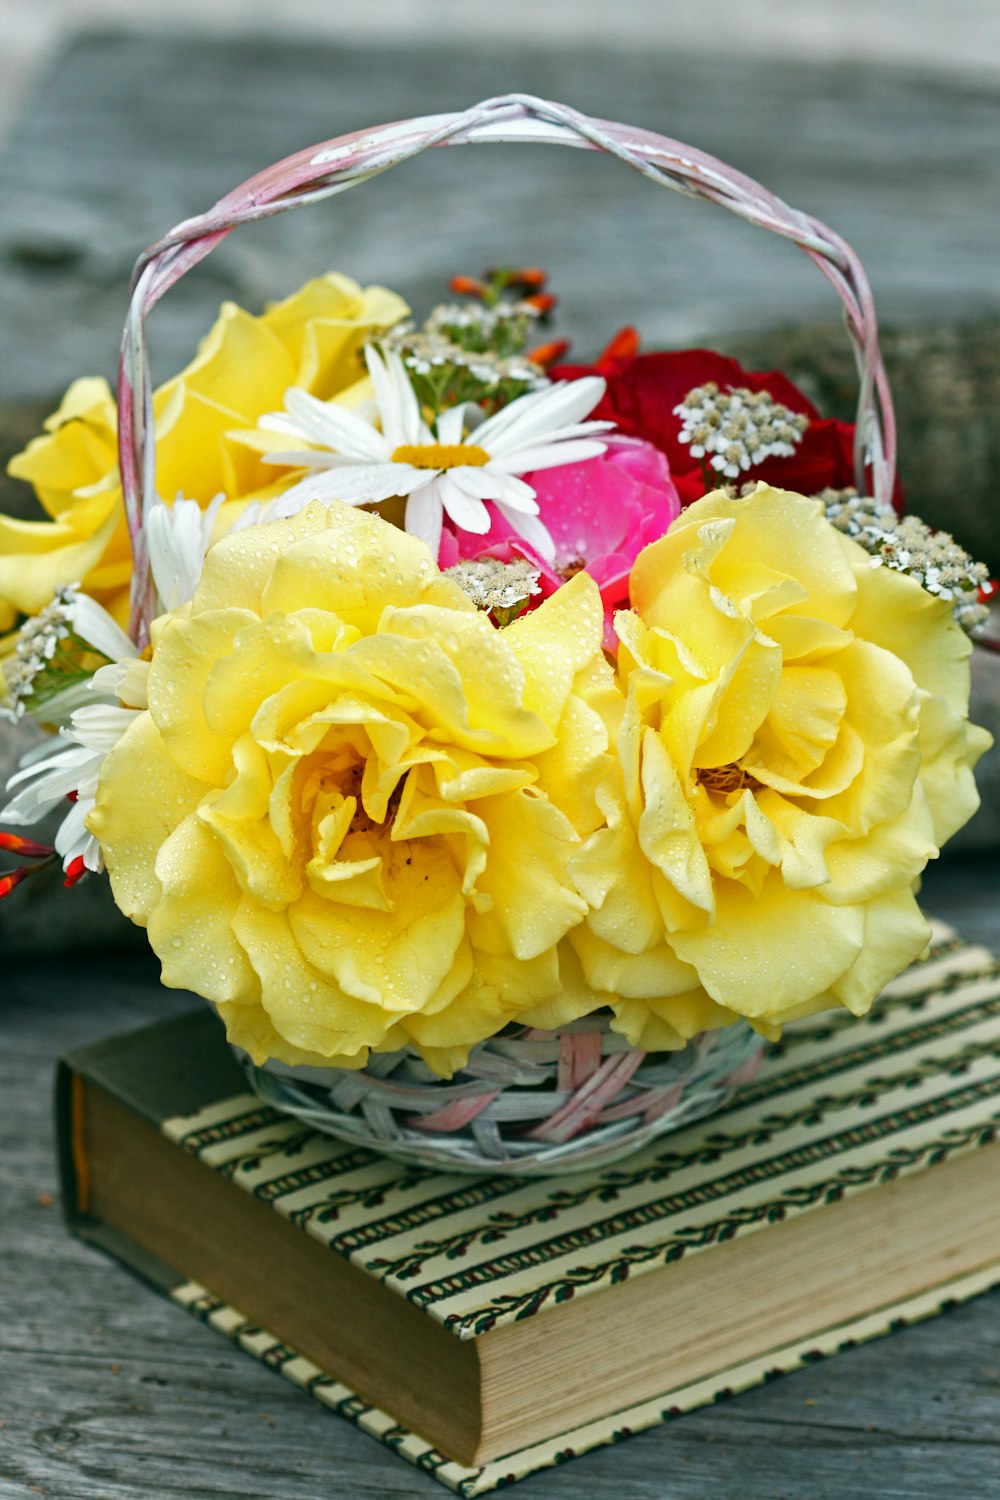 gelbe Rosenblüte im Korb auf Buch